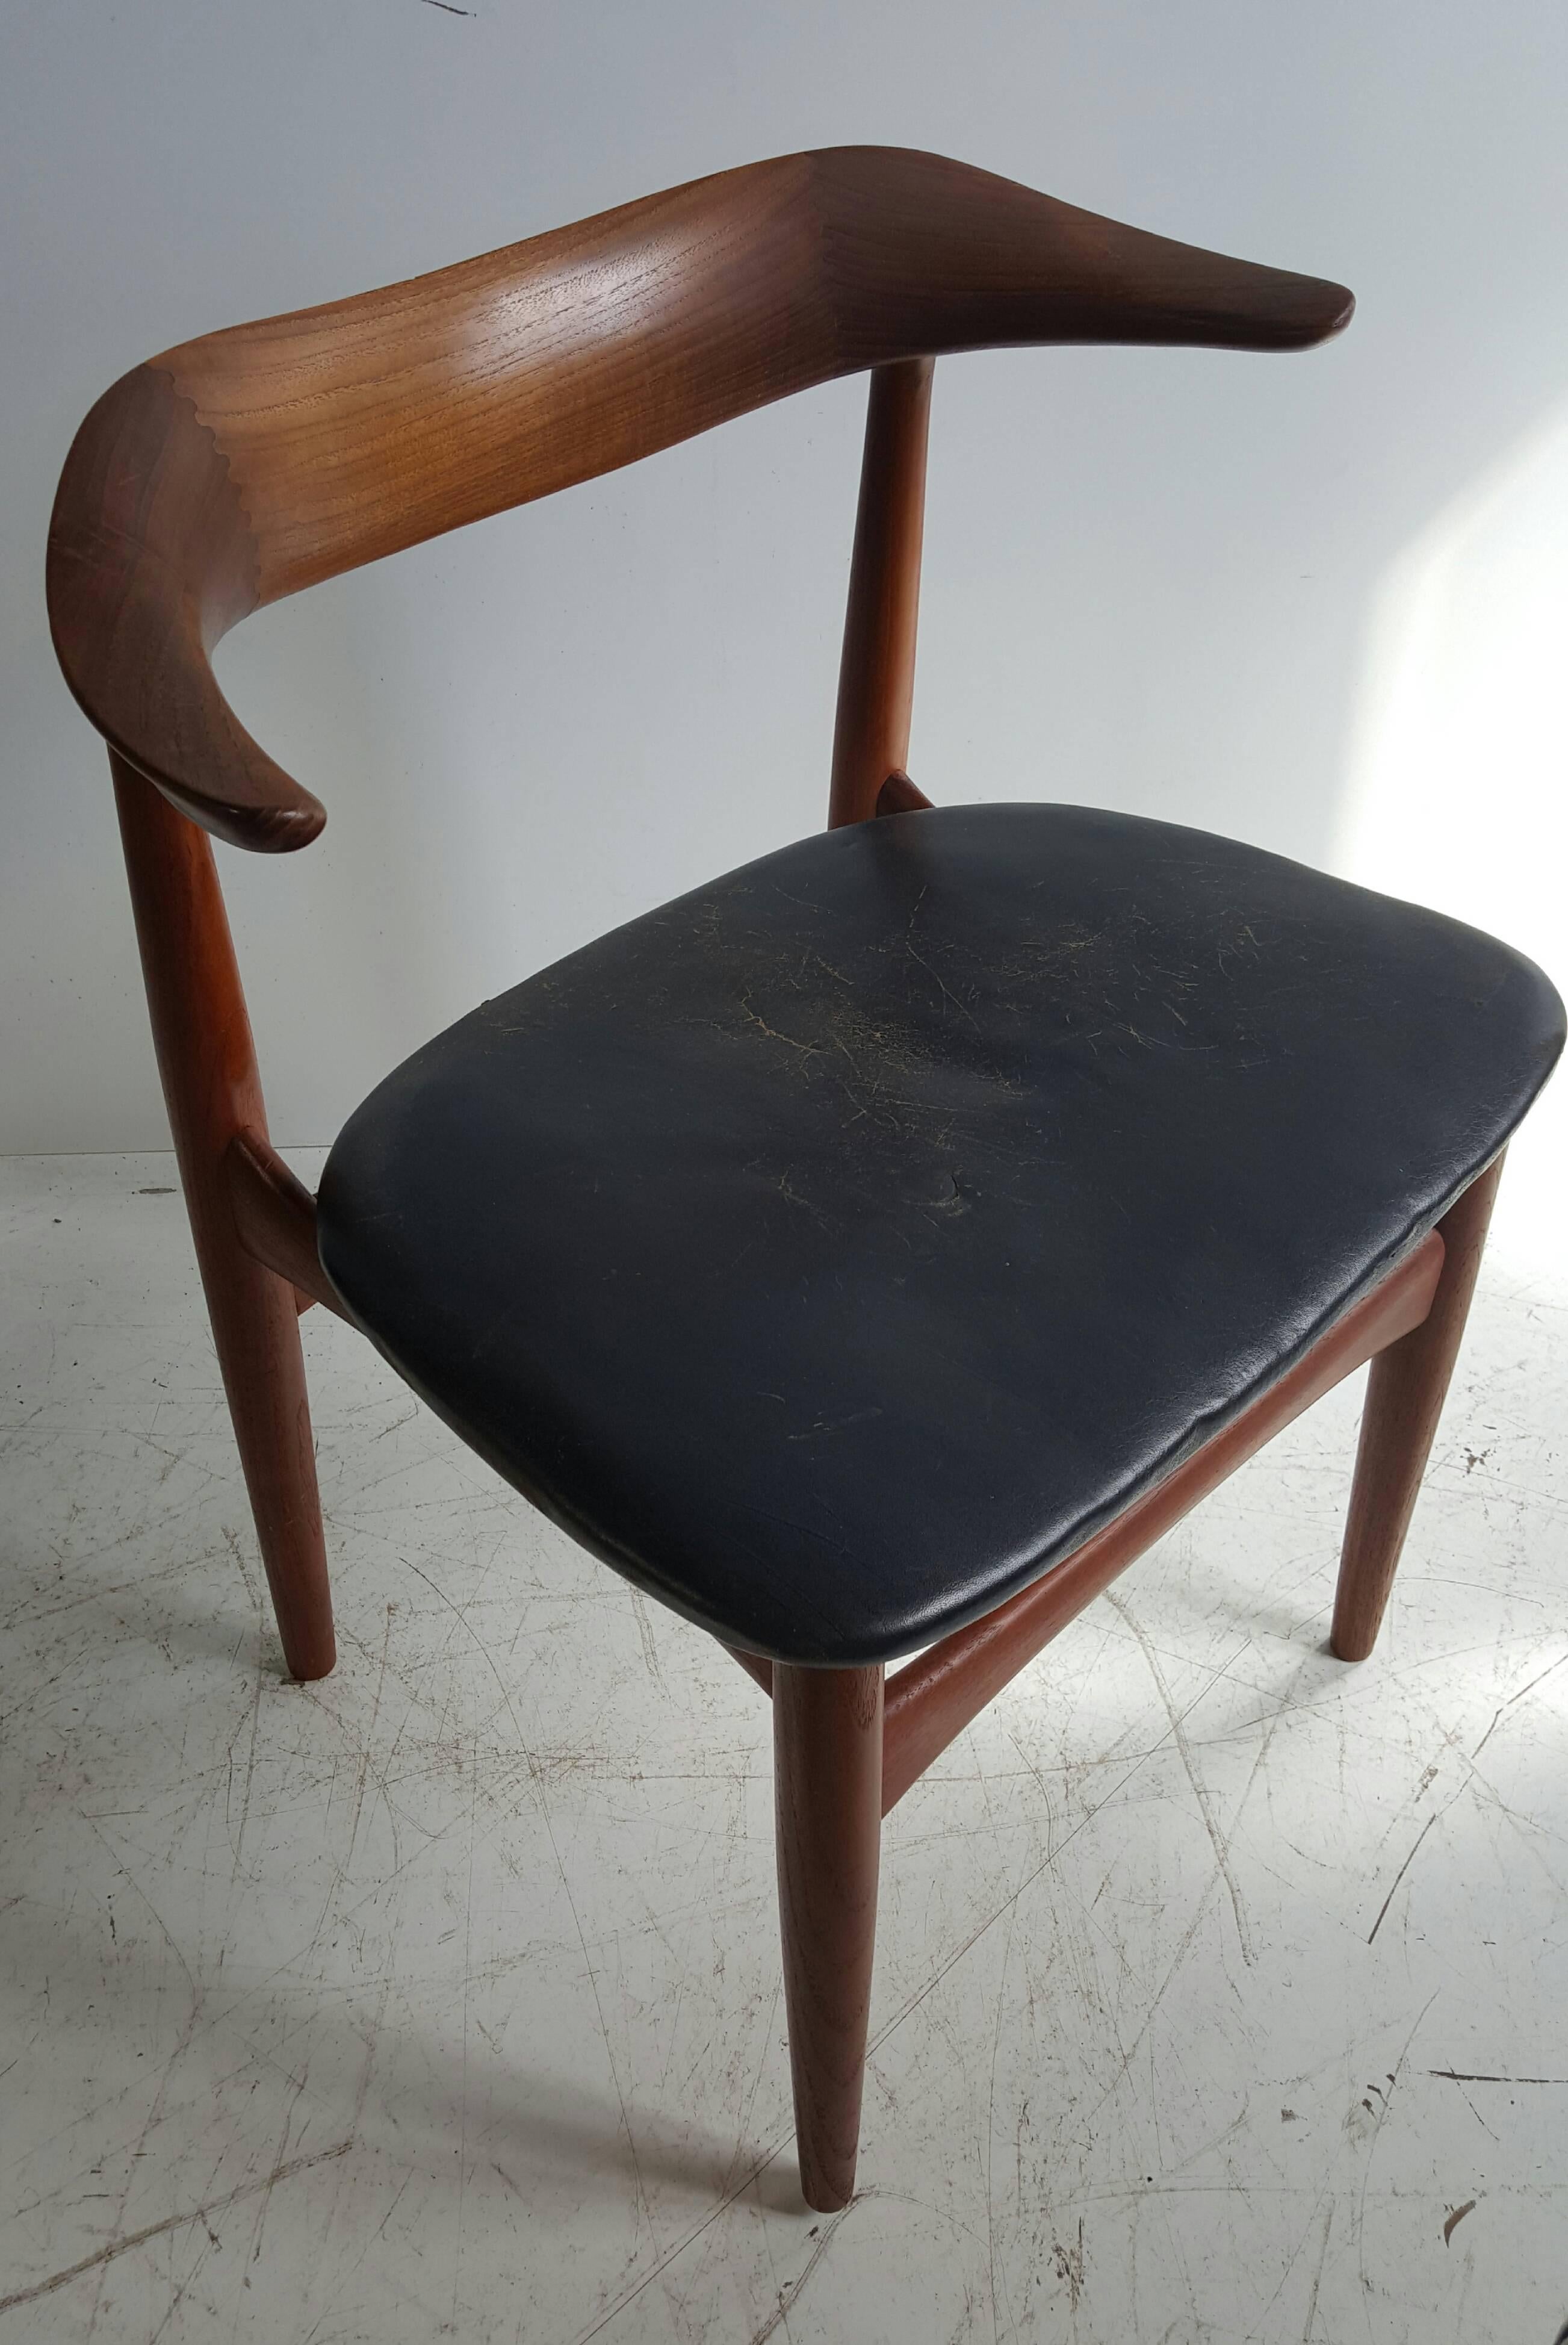 Moderner dänischer Sessel aus Nussbaum und Leder von Povl Dinesen. Klassisches Design und überlegene Qualität mit schönen gedrechselten und Holz und Tischlerei, würde ein schöner Schreibtisch oder Beistellstuhl sein. Behält originales schwarzes